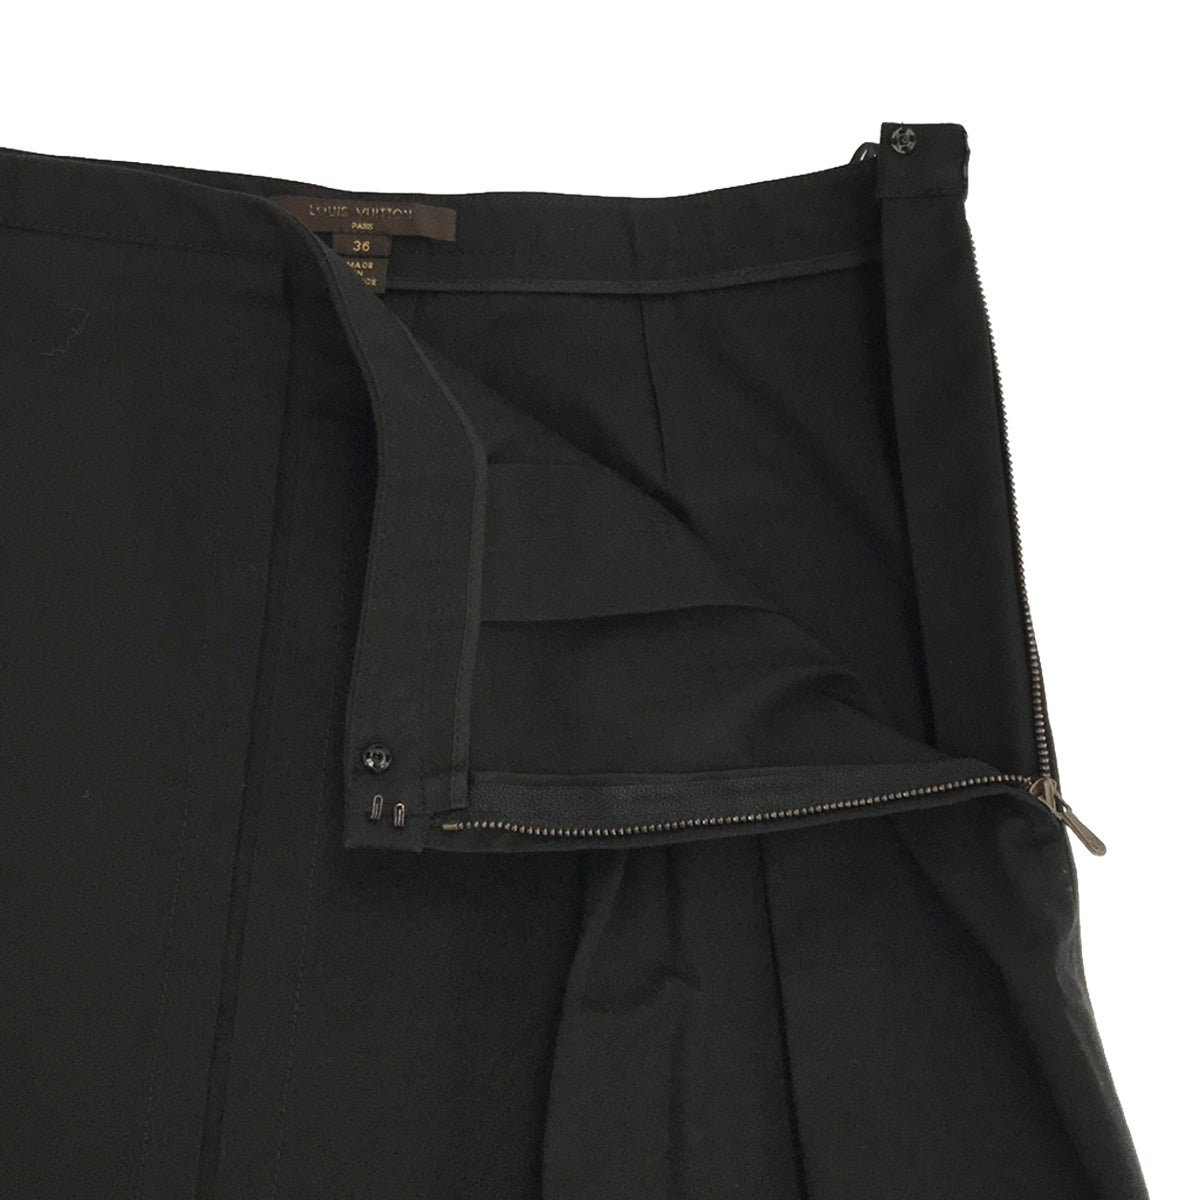 Louis Vuitton / ルイヴィトン | コットン サイドジップスカート | 36 | ブラック | レディース